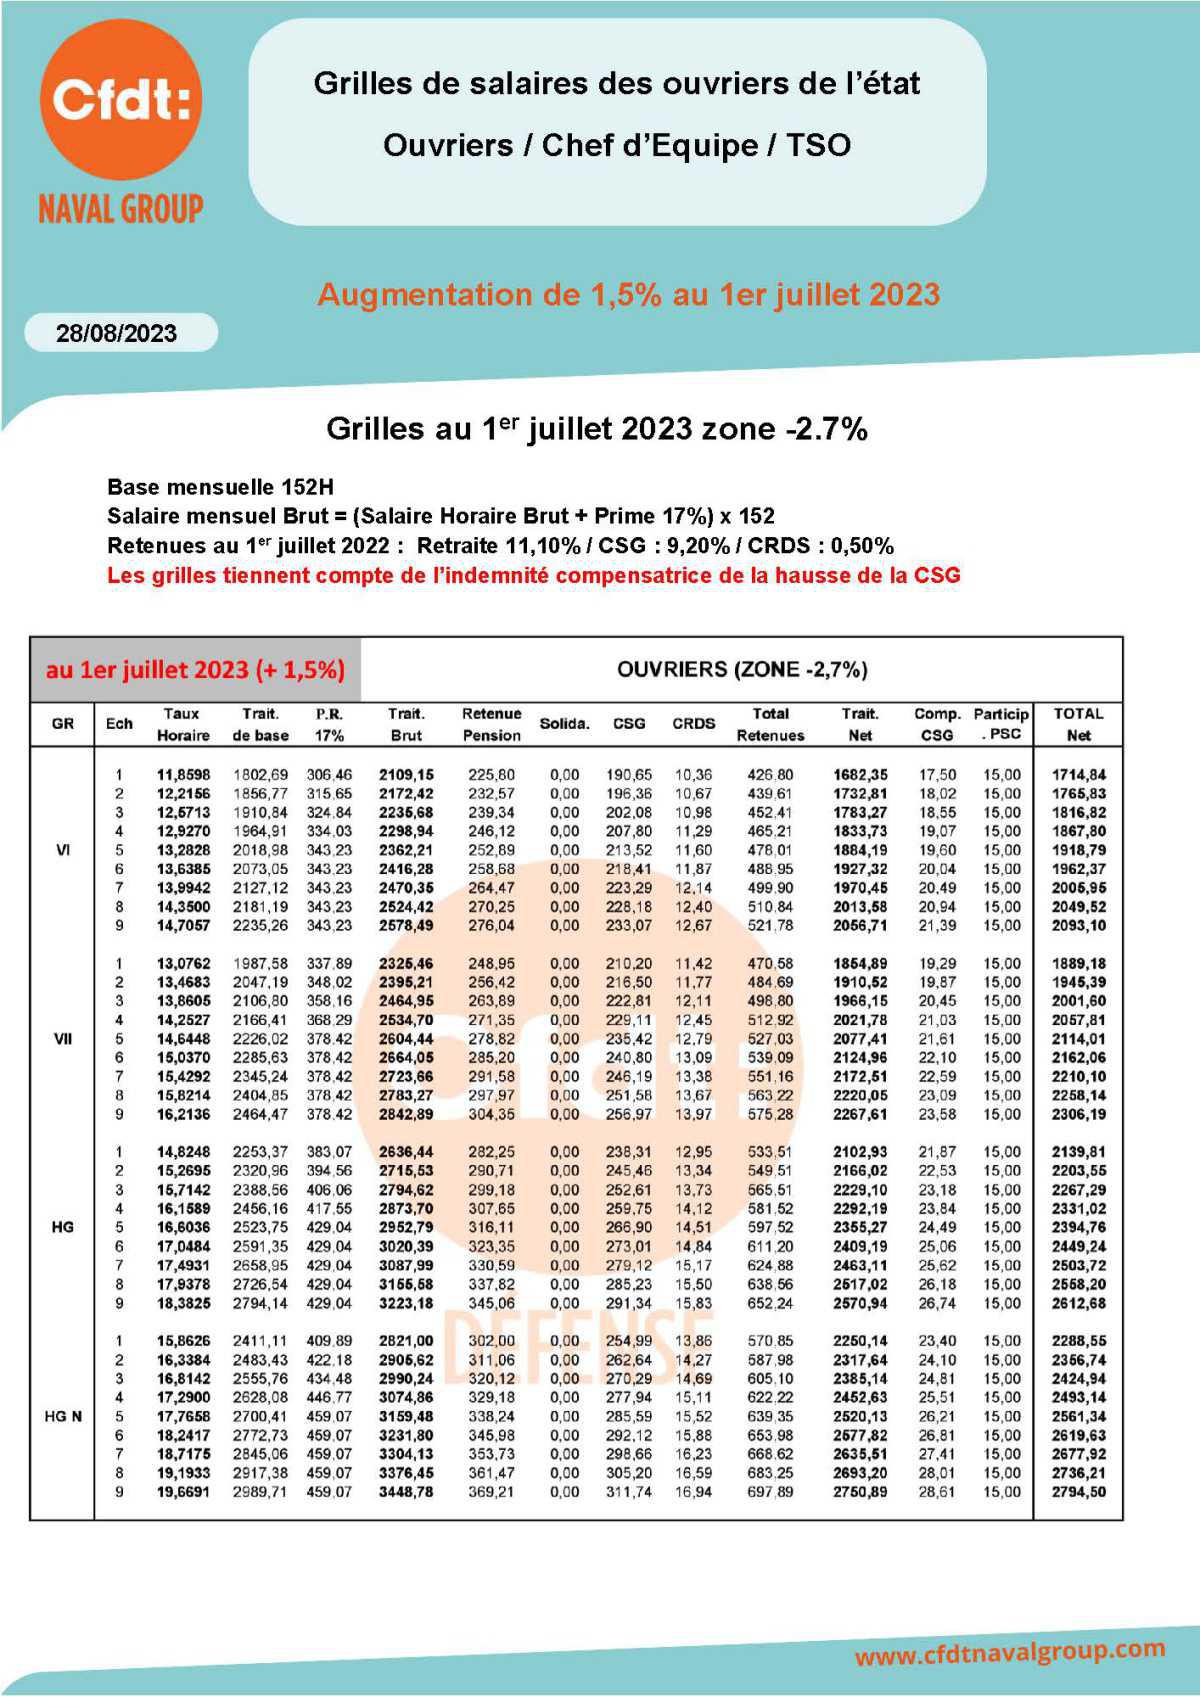 Grilles au 1er juillet 2023 PMAD - Abattement 2,7%